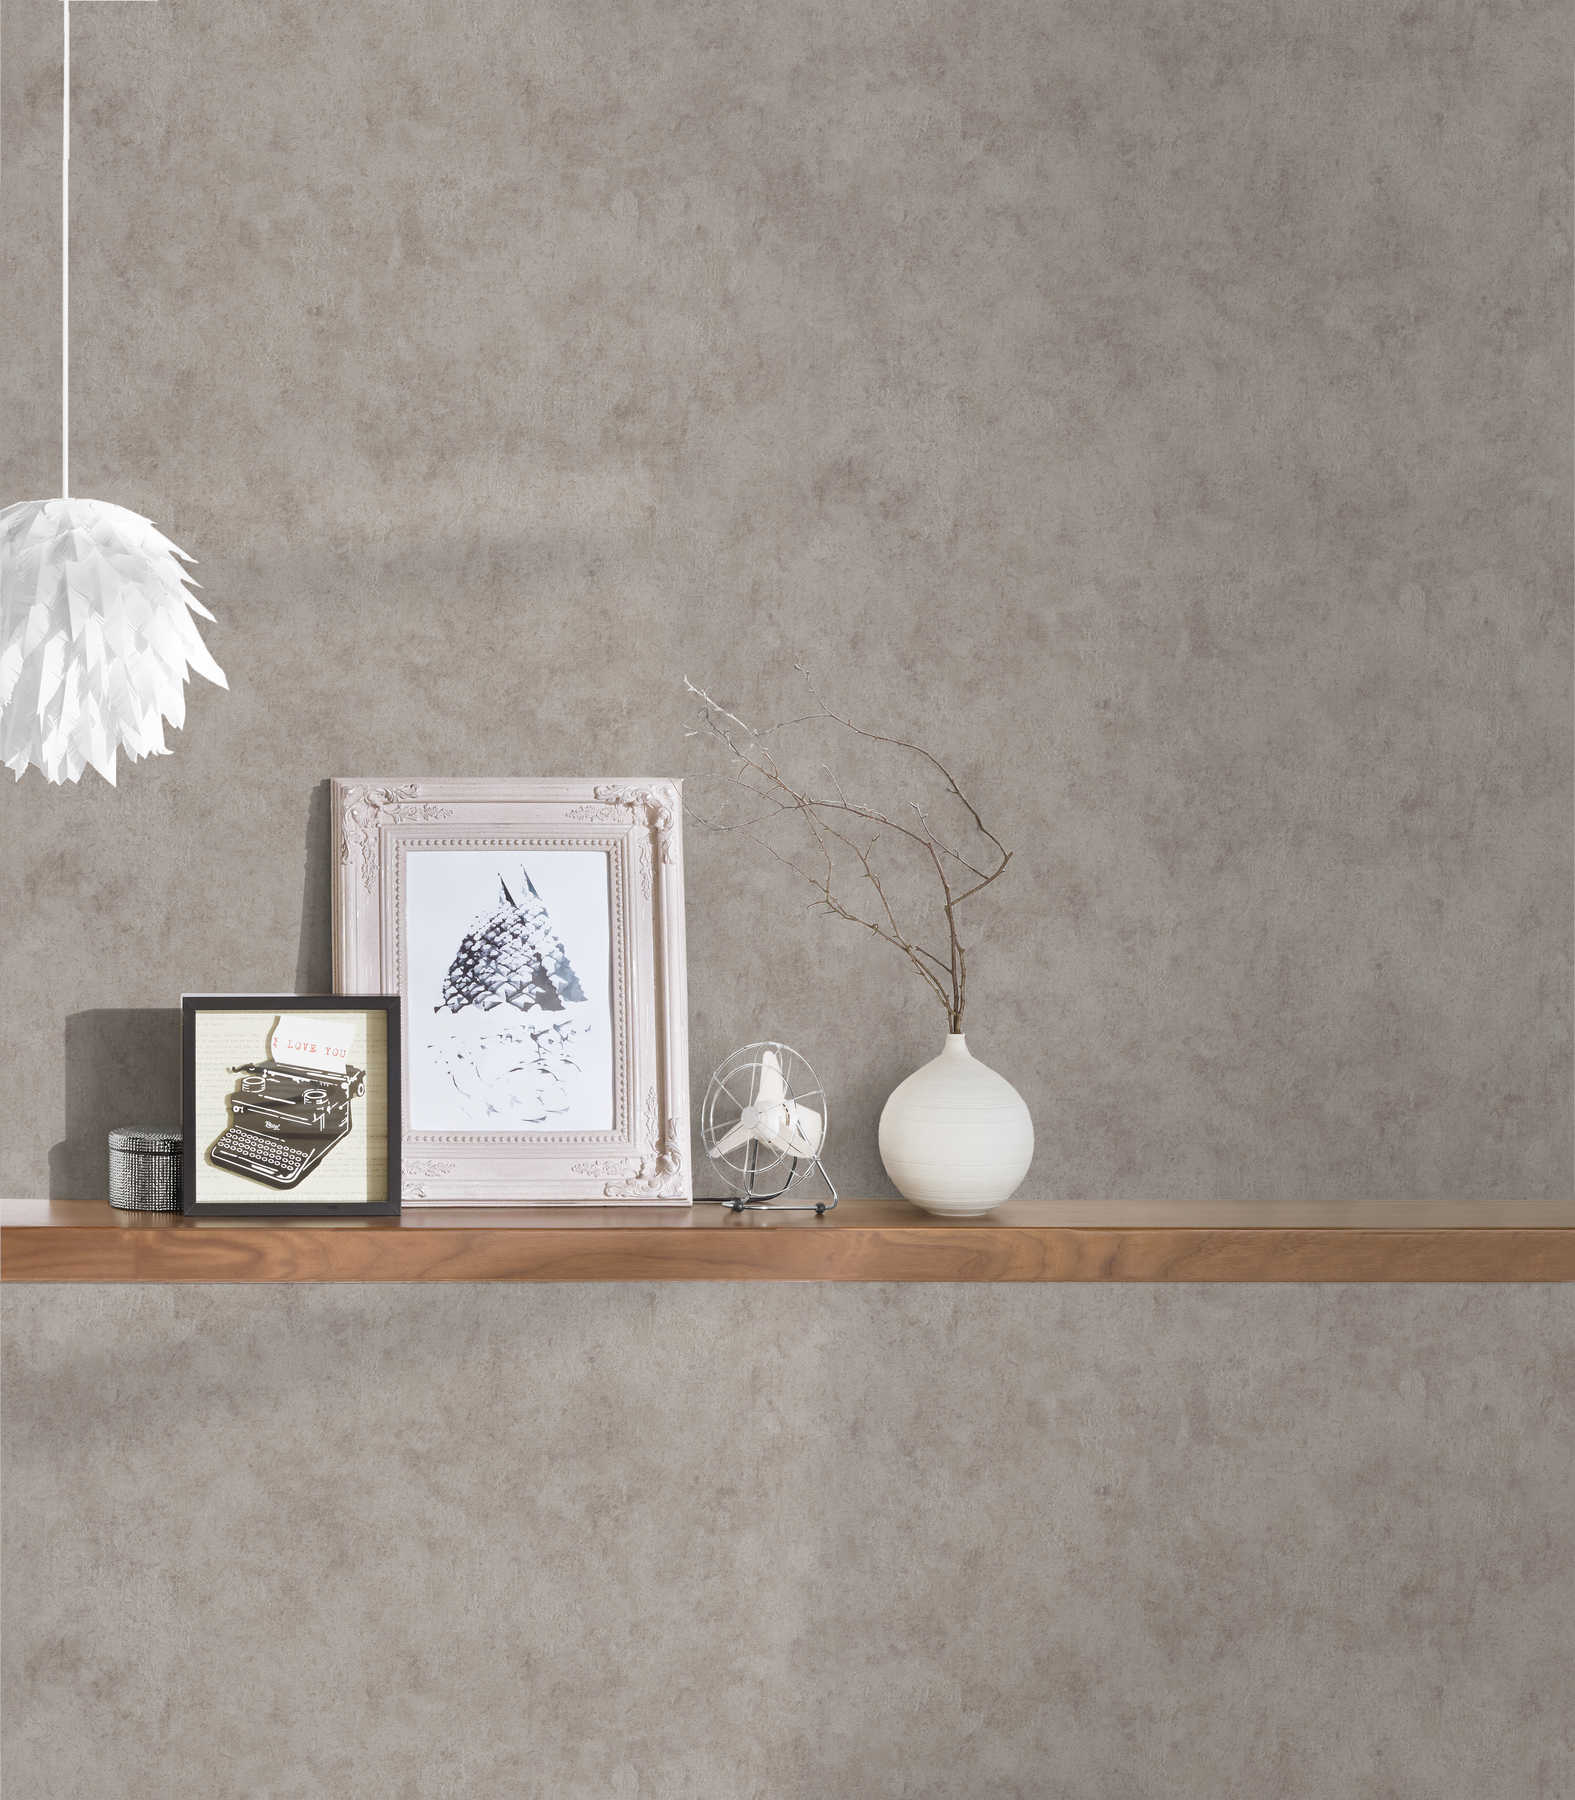             Silk matte wallpaper mottled grey in vintage style
        